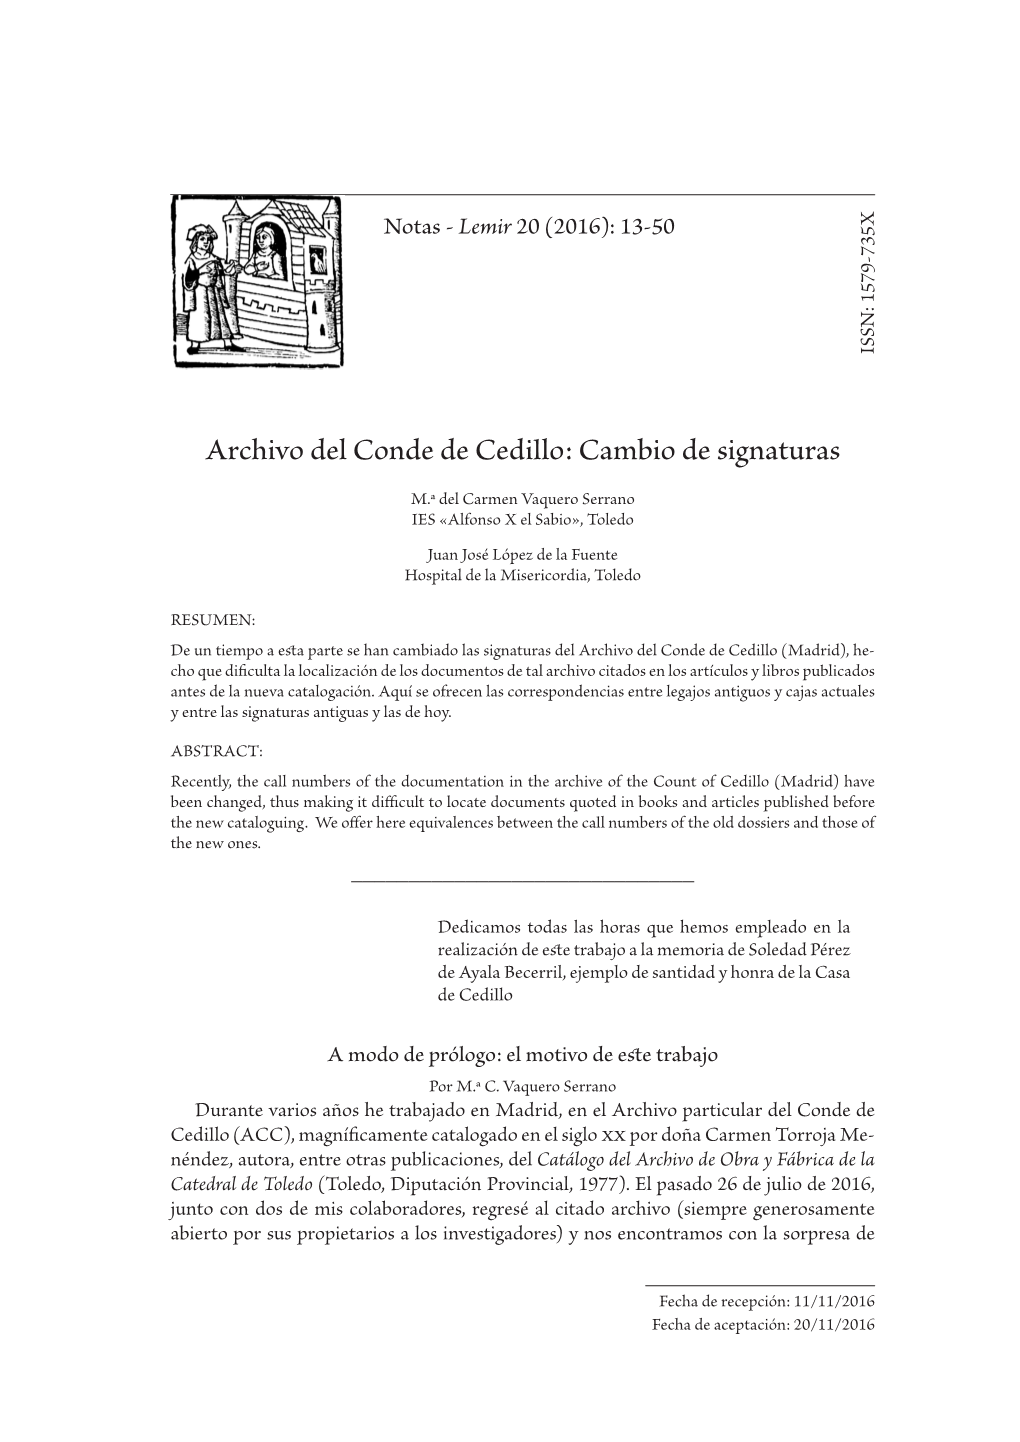 Archivo Del Conde De Cedillo: Cambio De Signaturas De Cambio Cedillo: De Conde Archivo Del (Toledo, Diputación Provincial, 1977)